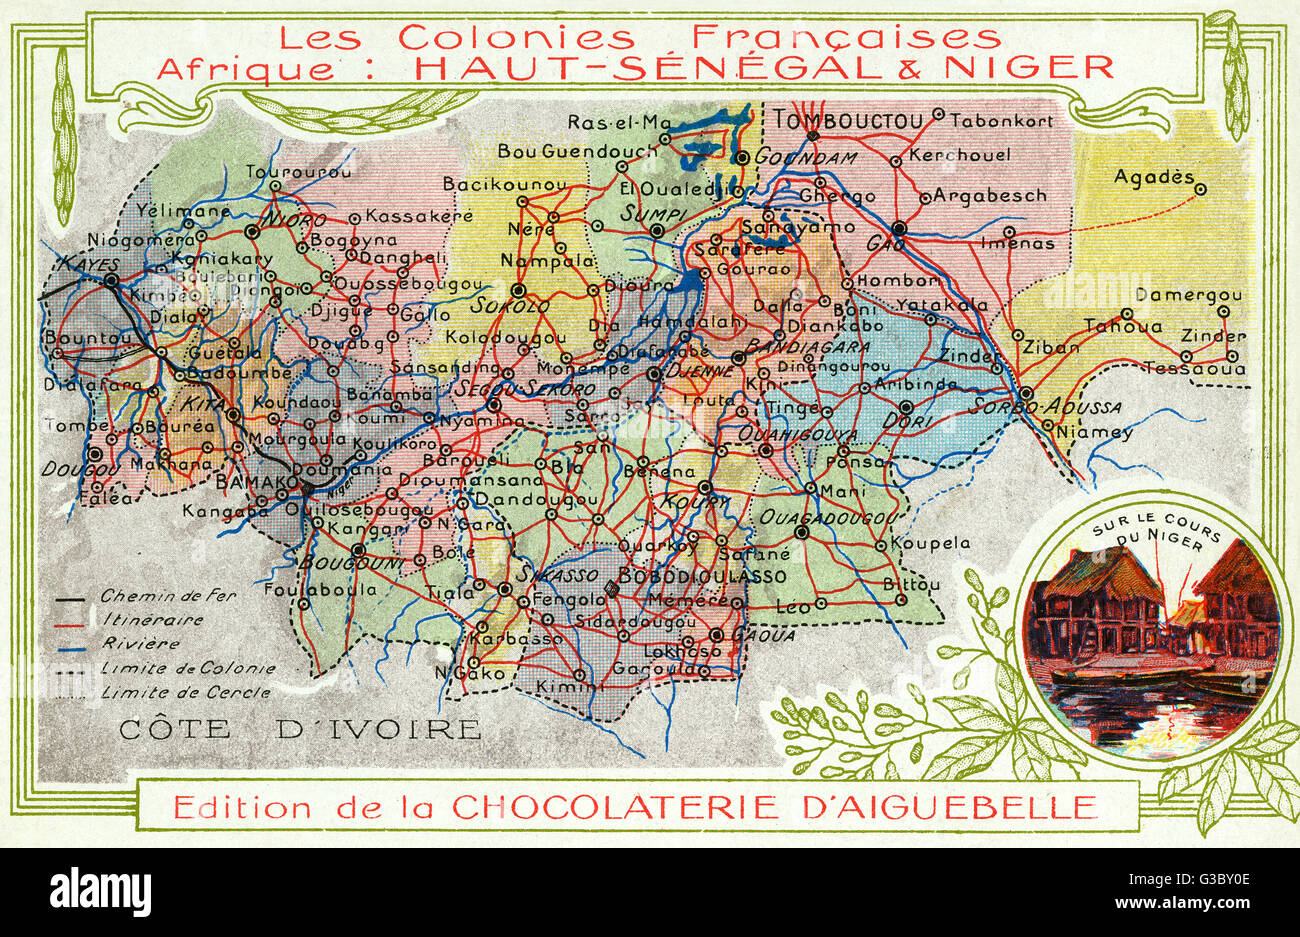 Sénégal et Niger, colonies françaises en Afrique - carte Banque D'Images